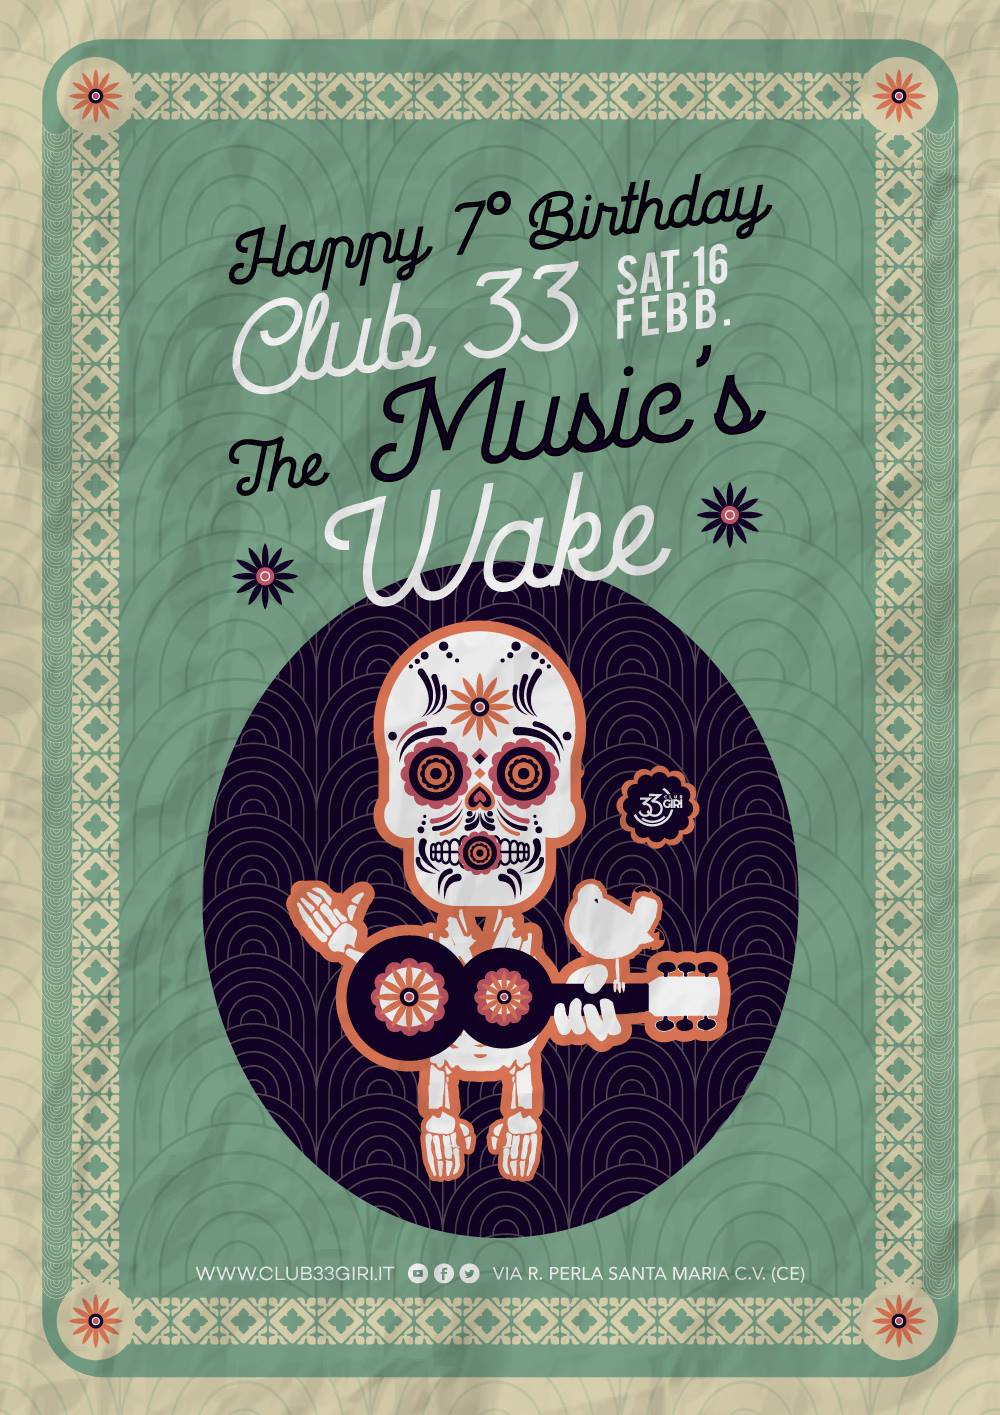 The Music’s Wake, la settima festa di compleanno dell’associazione culturale Club 33 giri